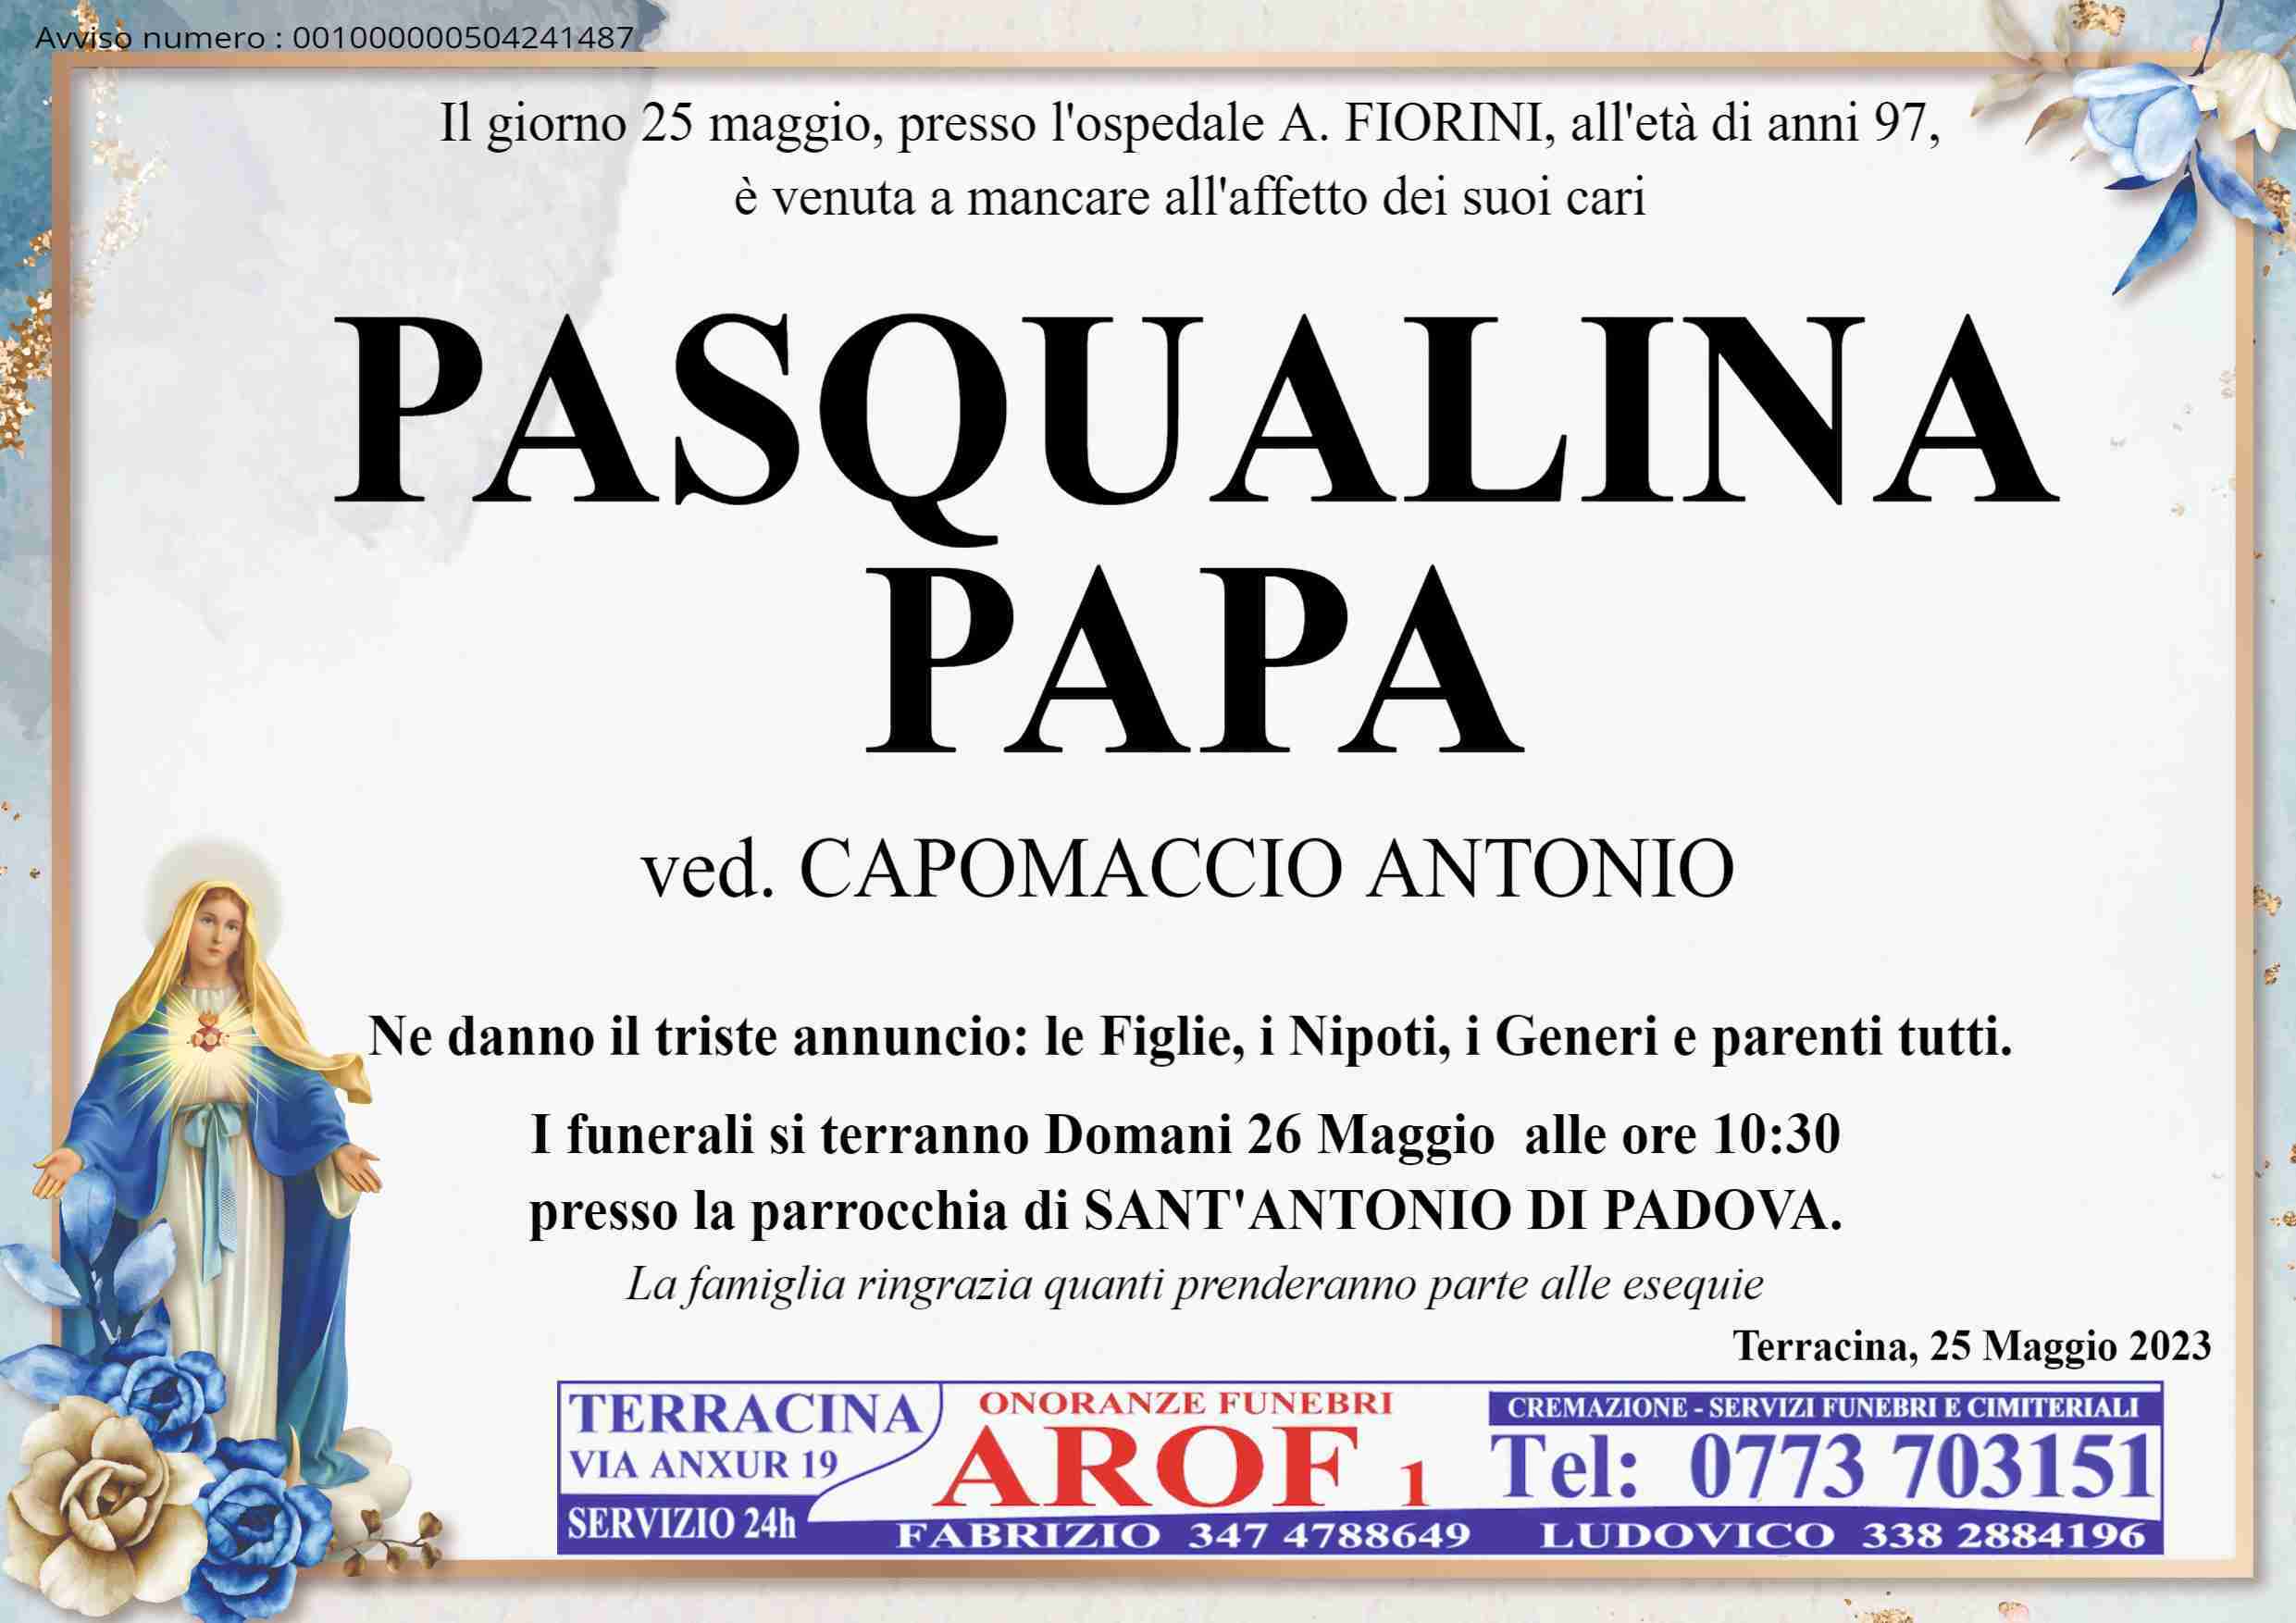 Pasqualina Papa